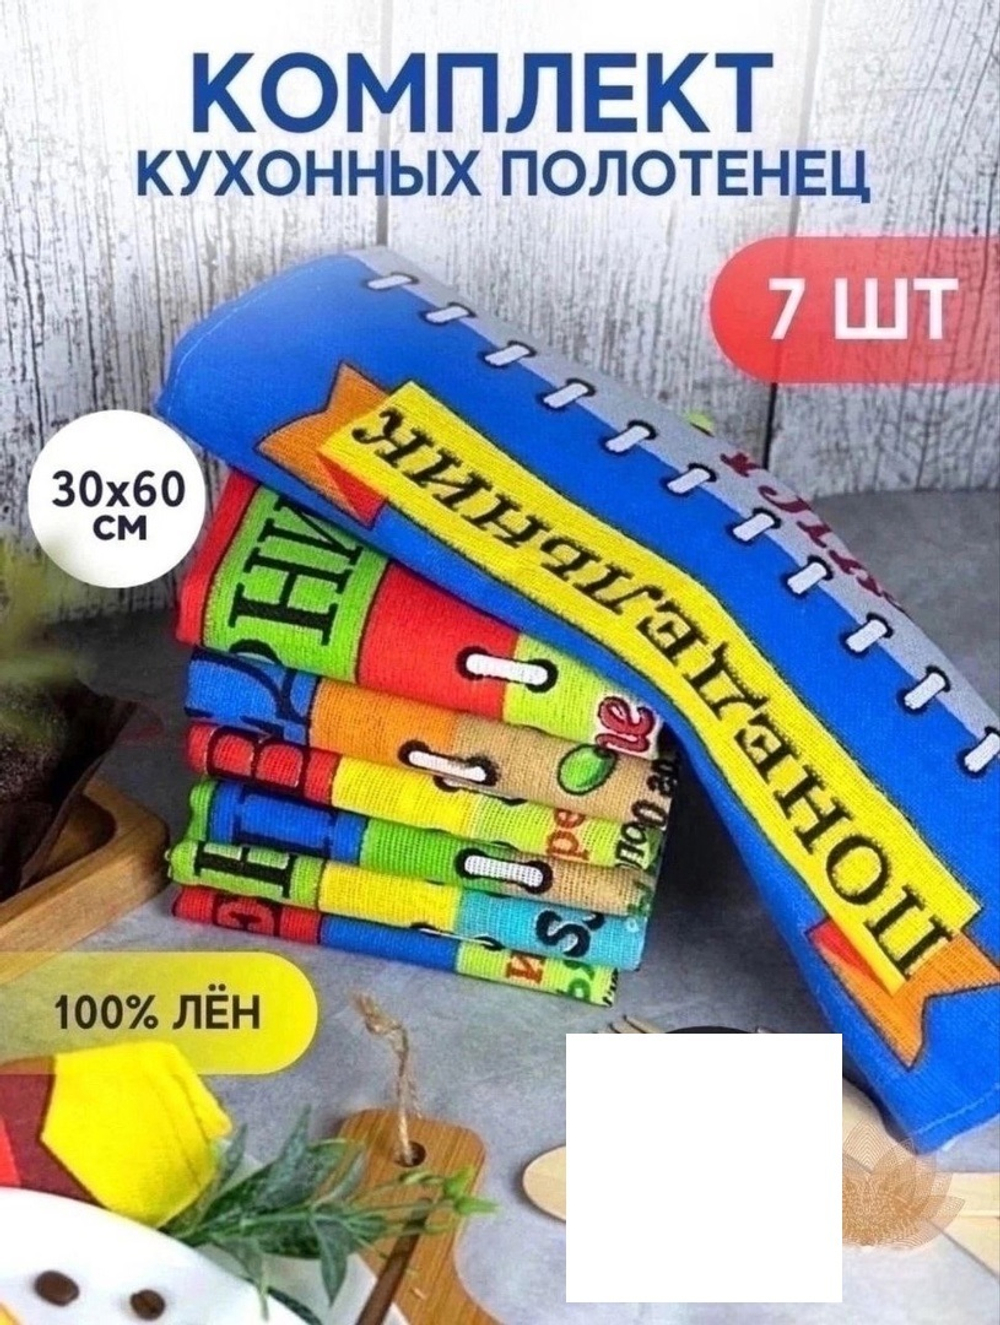 Товар 2502 "Неделька+Рецепты" Упак